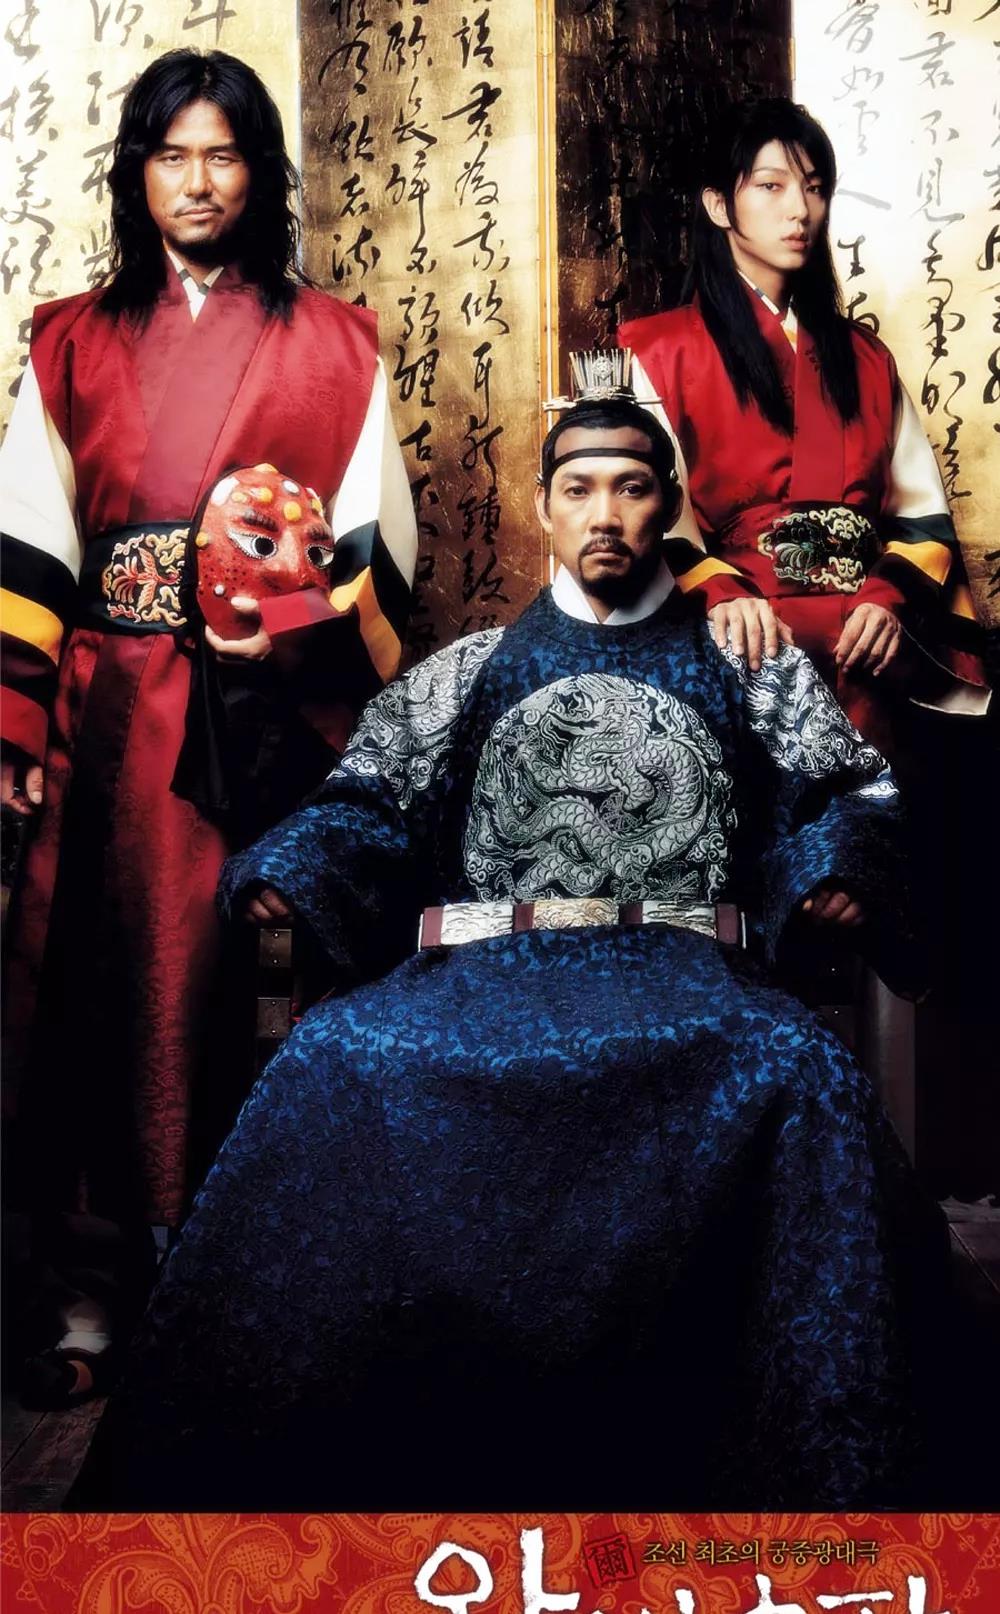 原创「世间情郎李准基」美丽有罪,韩国电影《王的男人》